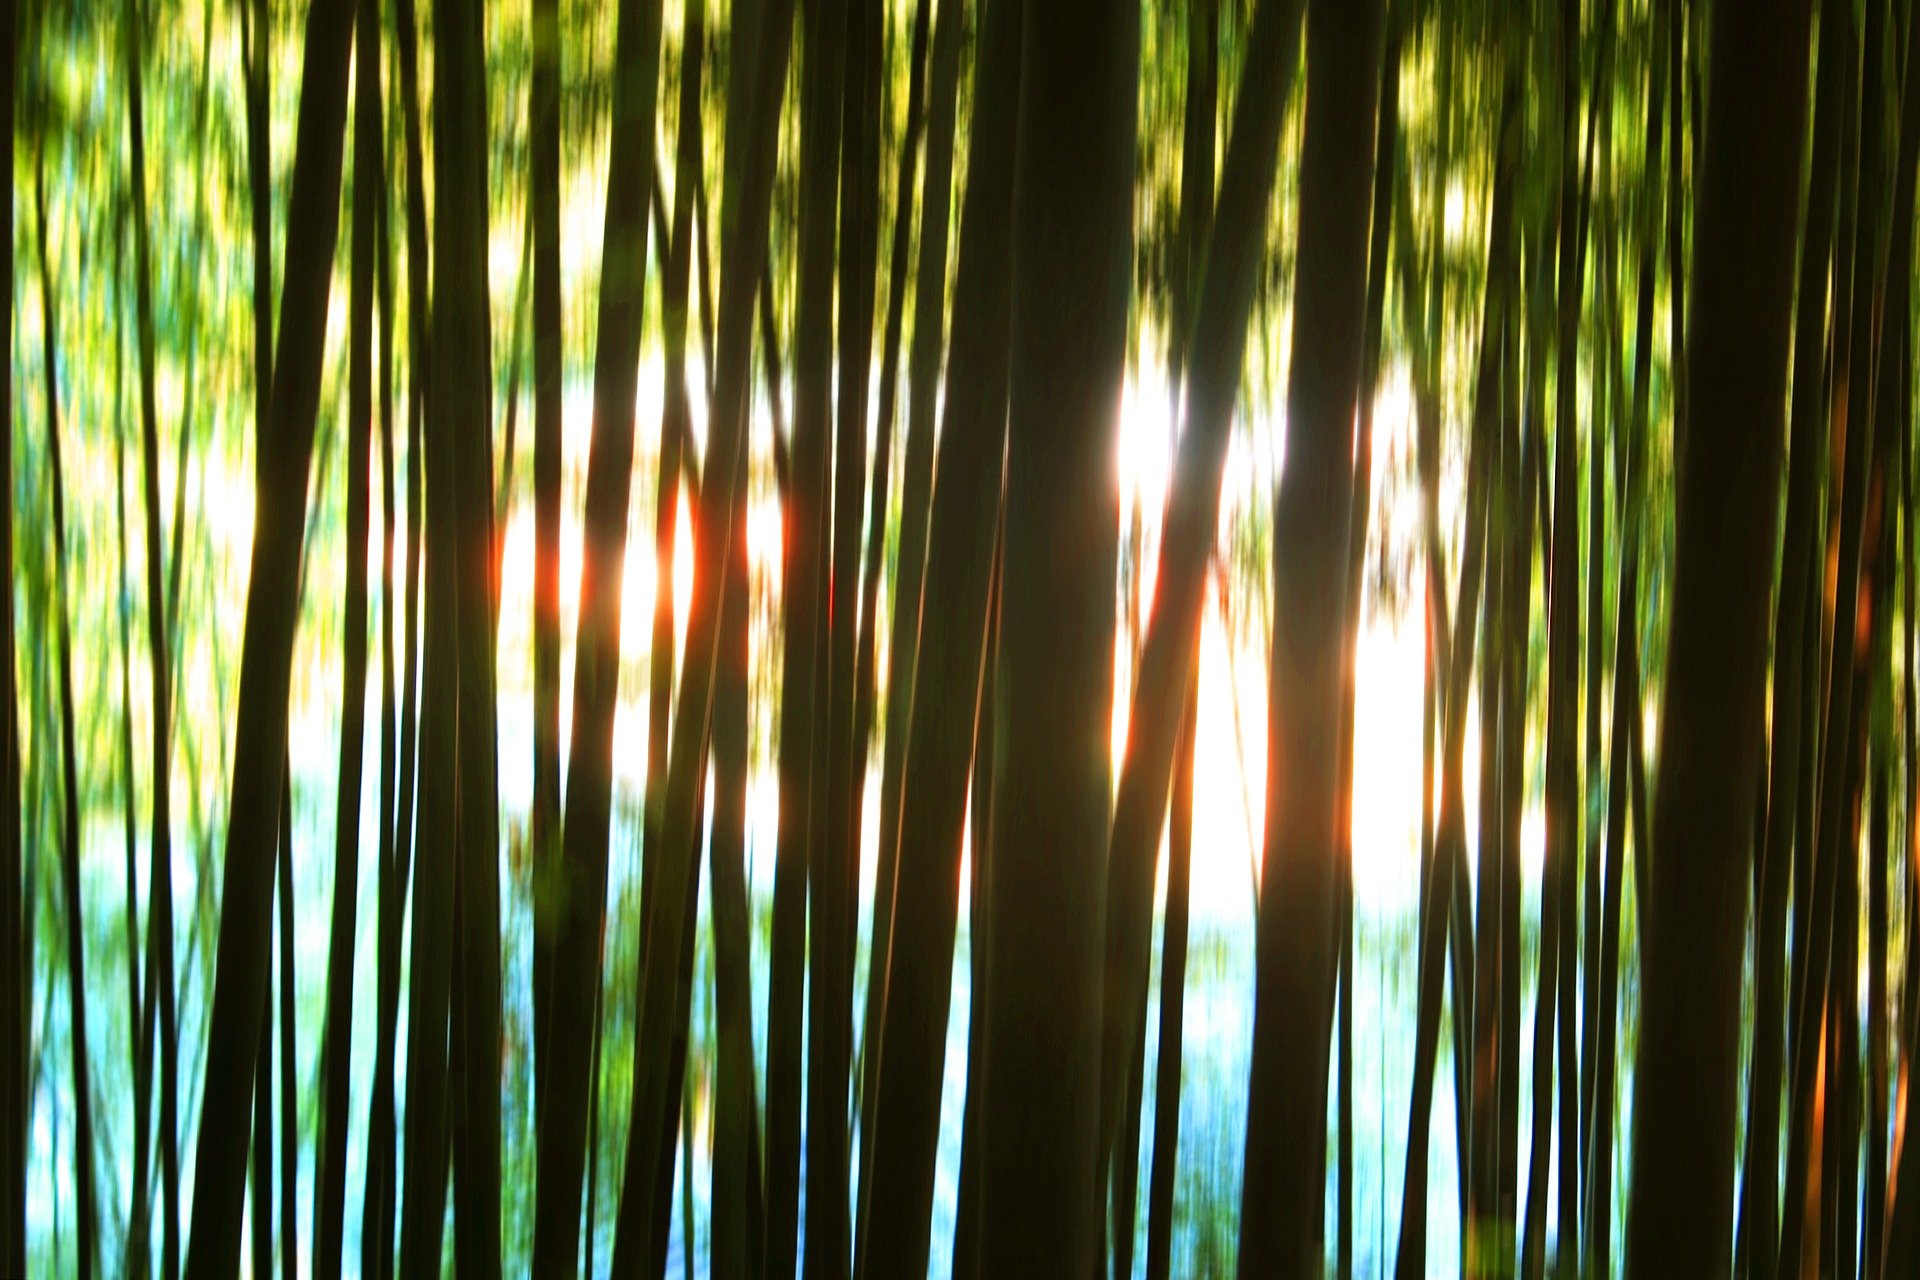 내 마음 속 이야기를 털어놓을 수 있는 ‘대나무숲’ 같은 존재는 정신건강을 위해 꼭 필요하다. 픽사베이 